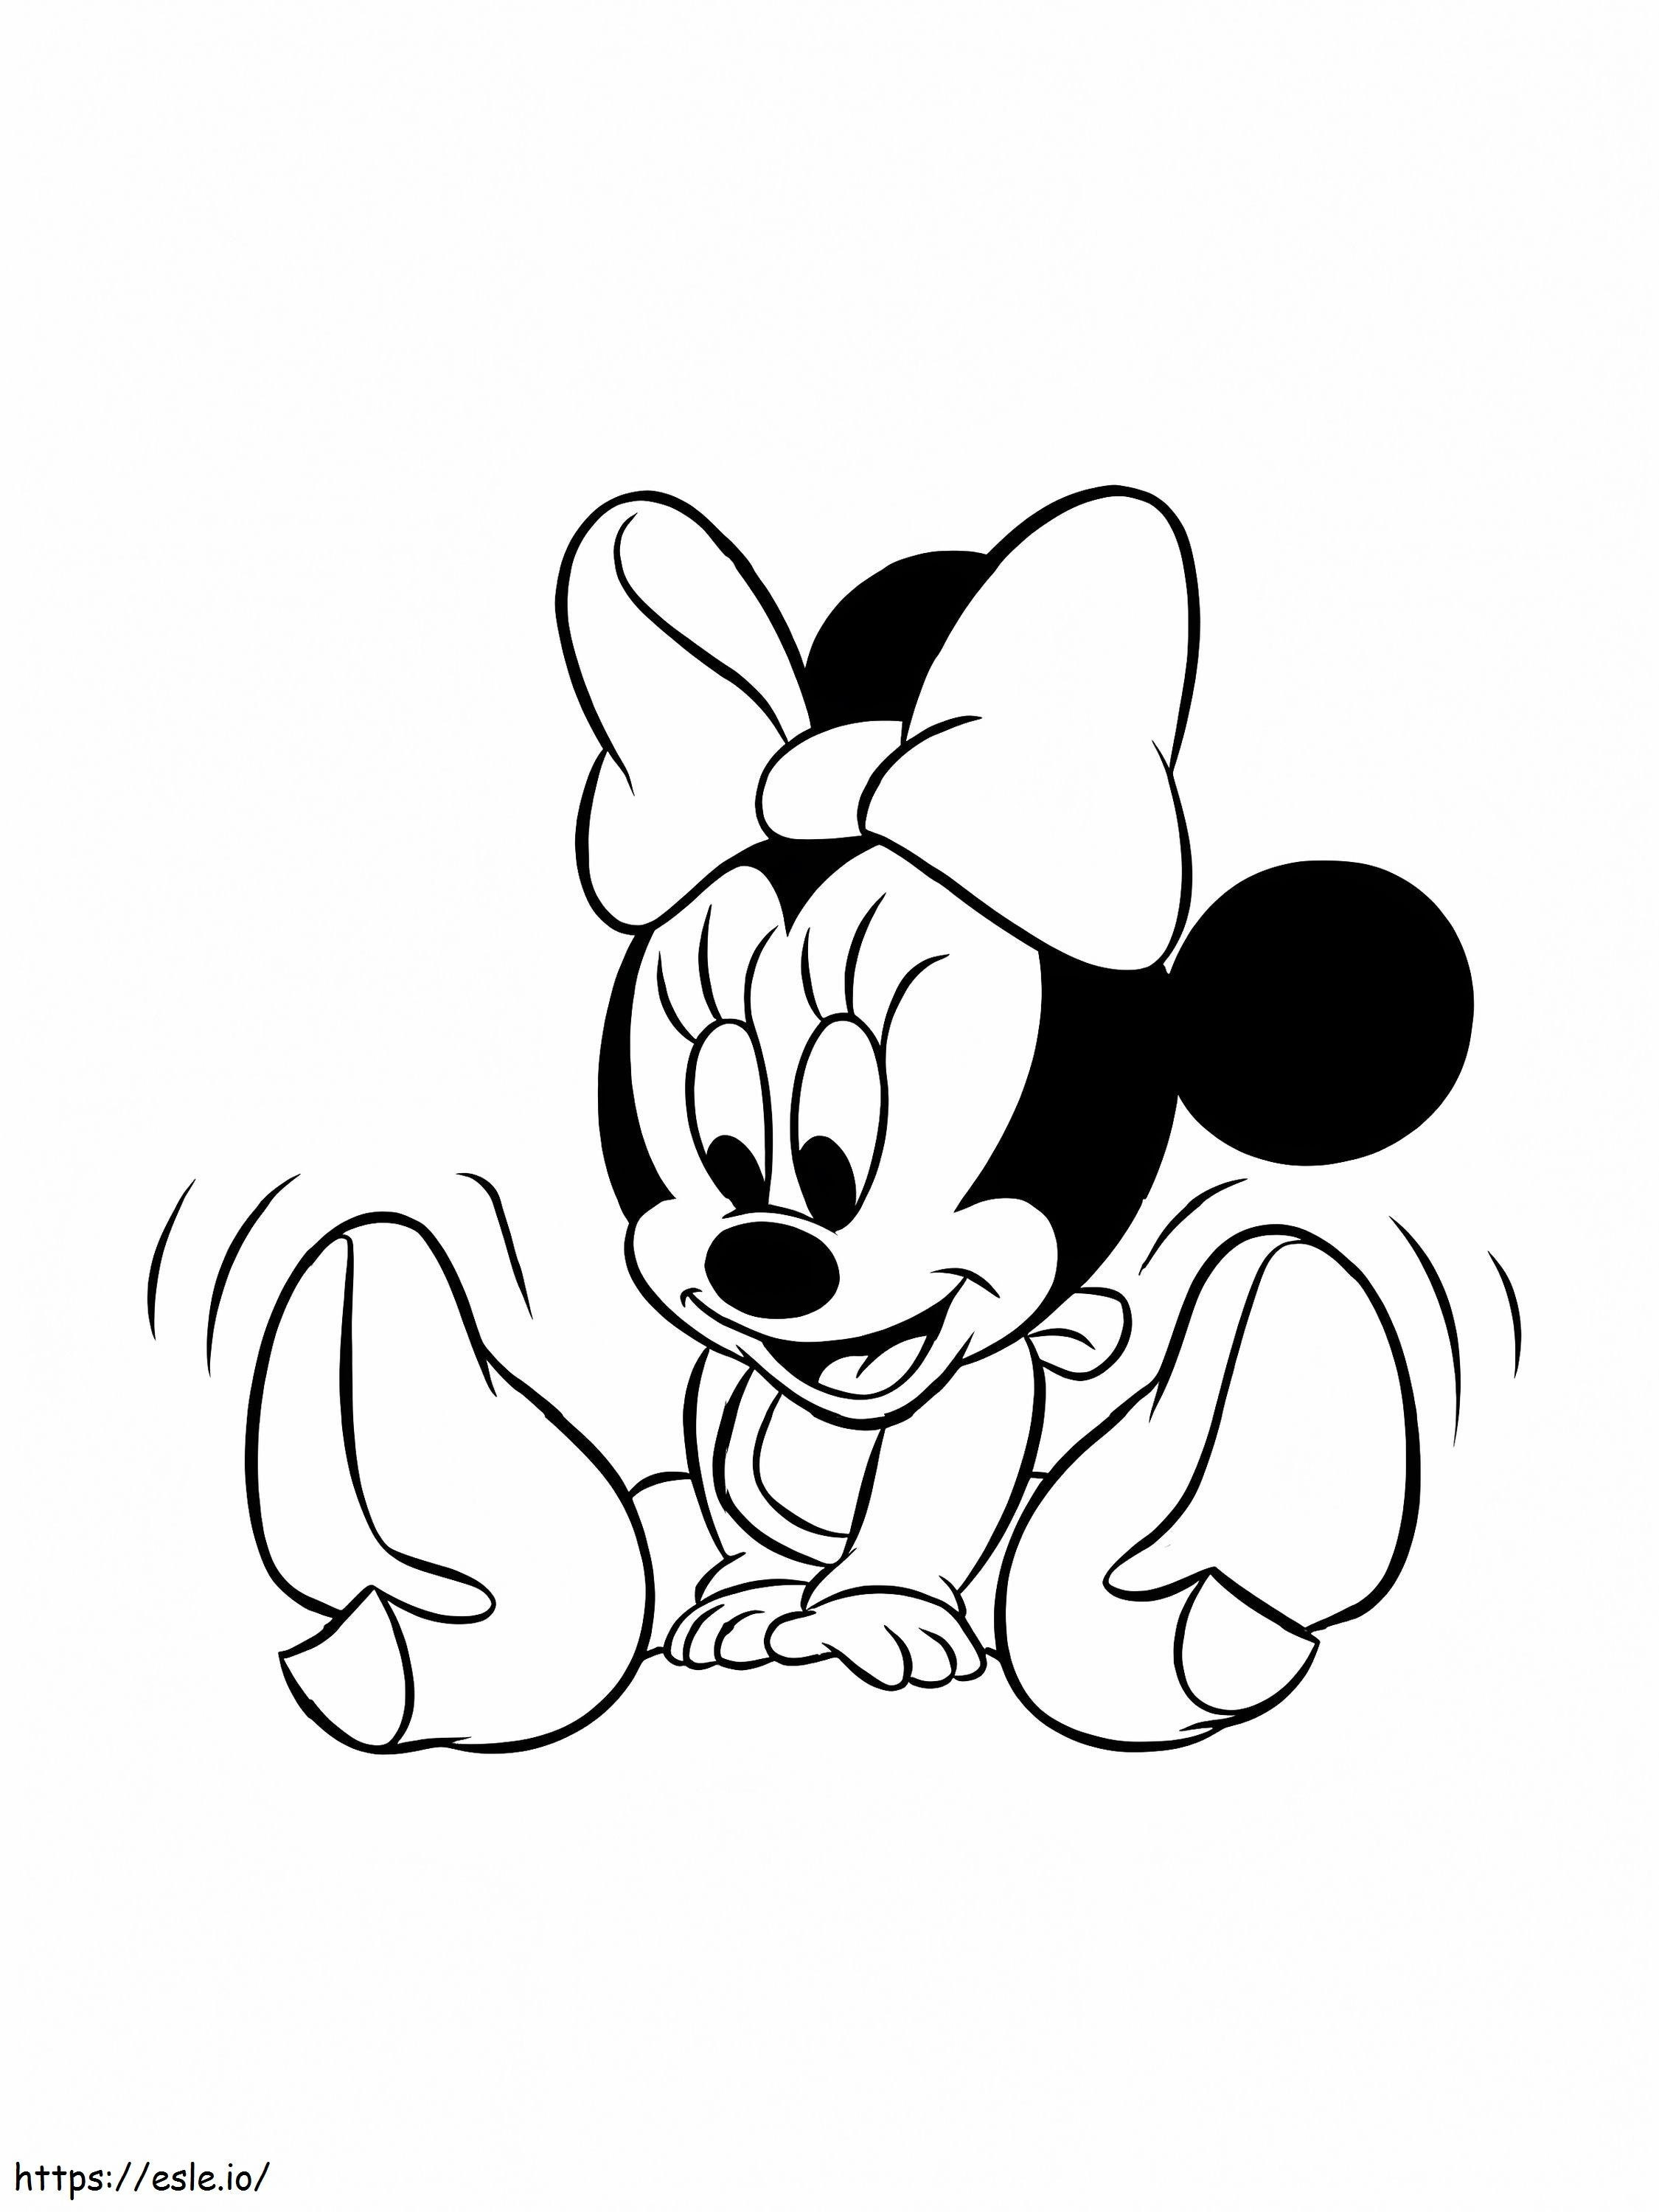 Süßes Disney-Baby Minnie ausmalbilder